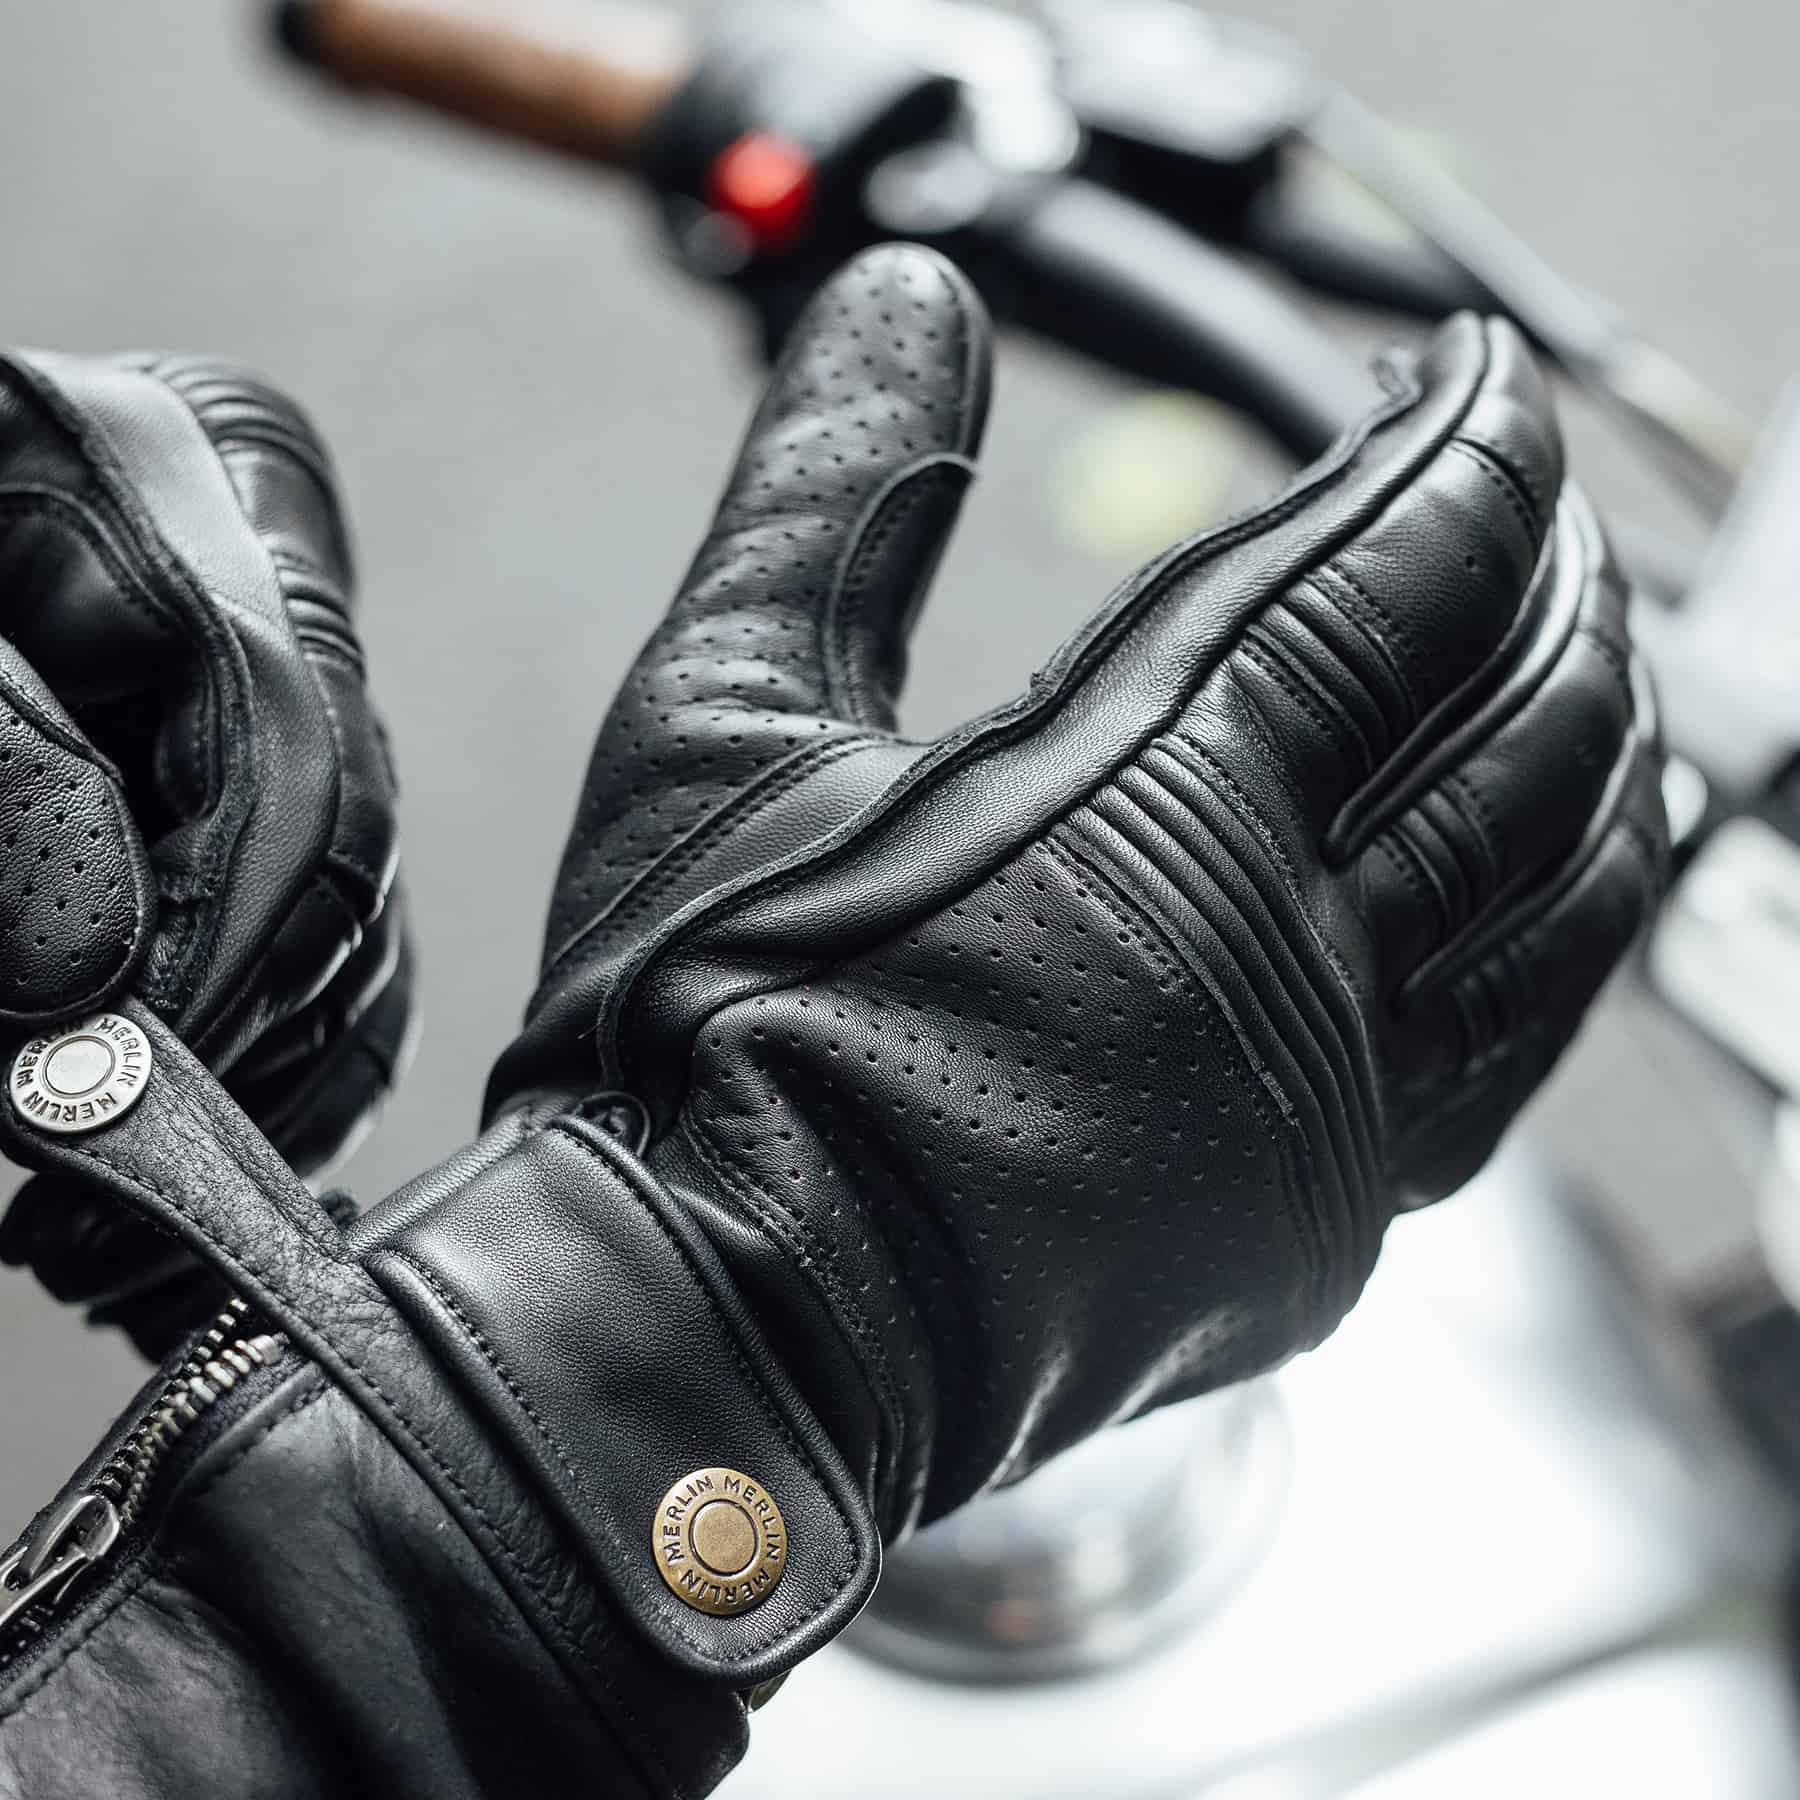 Merlin Leigh Gloves in black